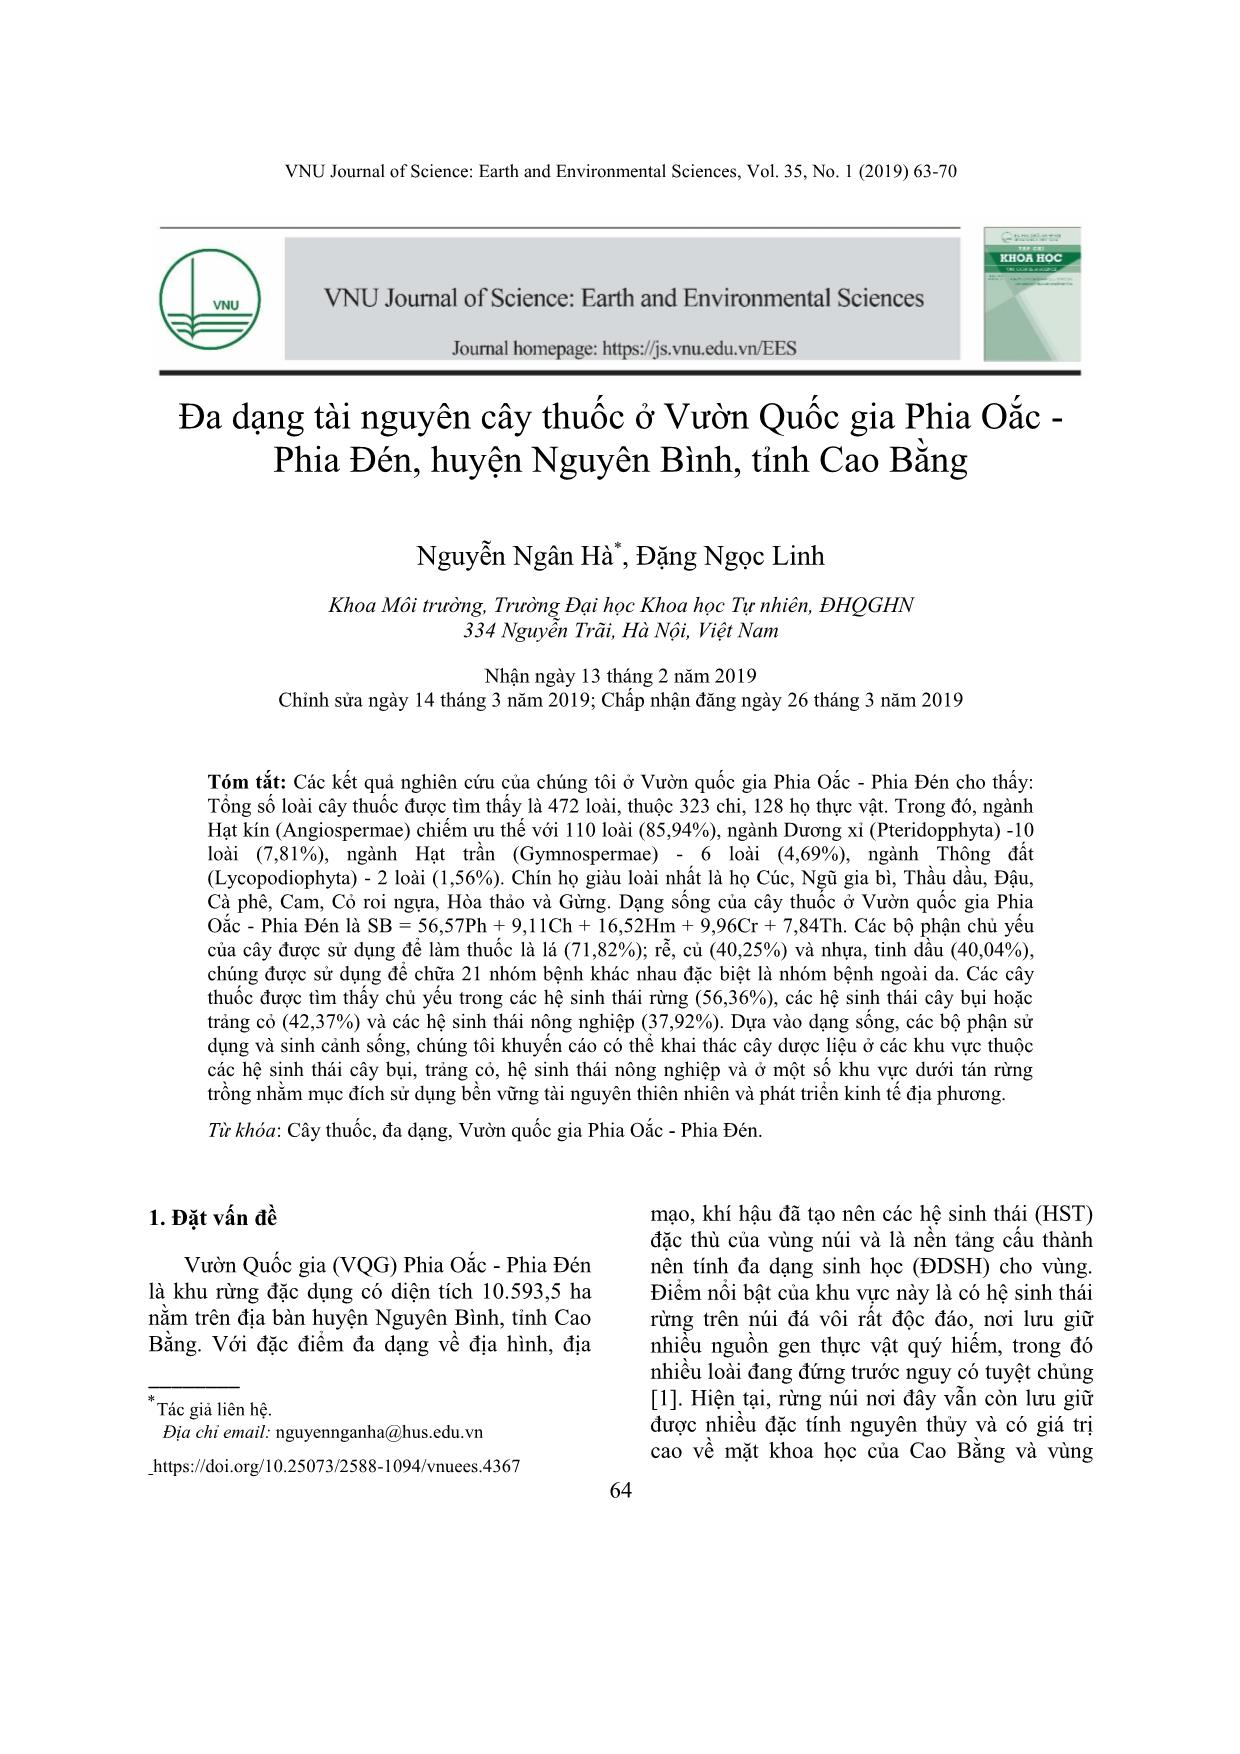 Đa dạng tài nguyên cây thuốc ở Vườn Quốc gia Phia Oắc - Phia Đén, huyện Nguyên Bình, tỉnh Cao Bằng trang 2